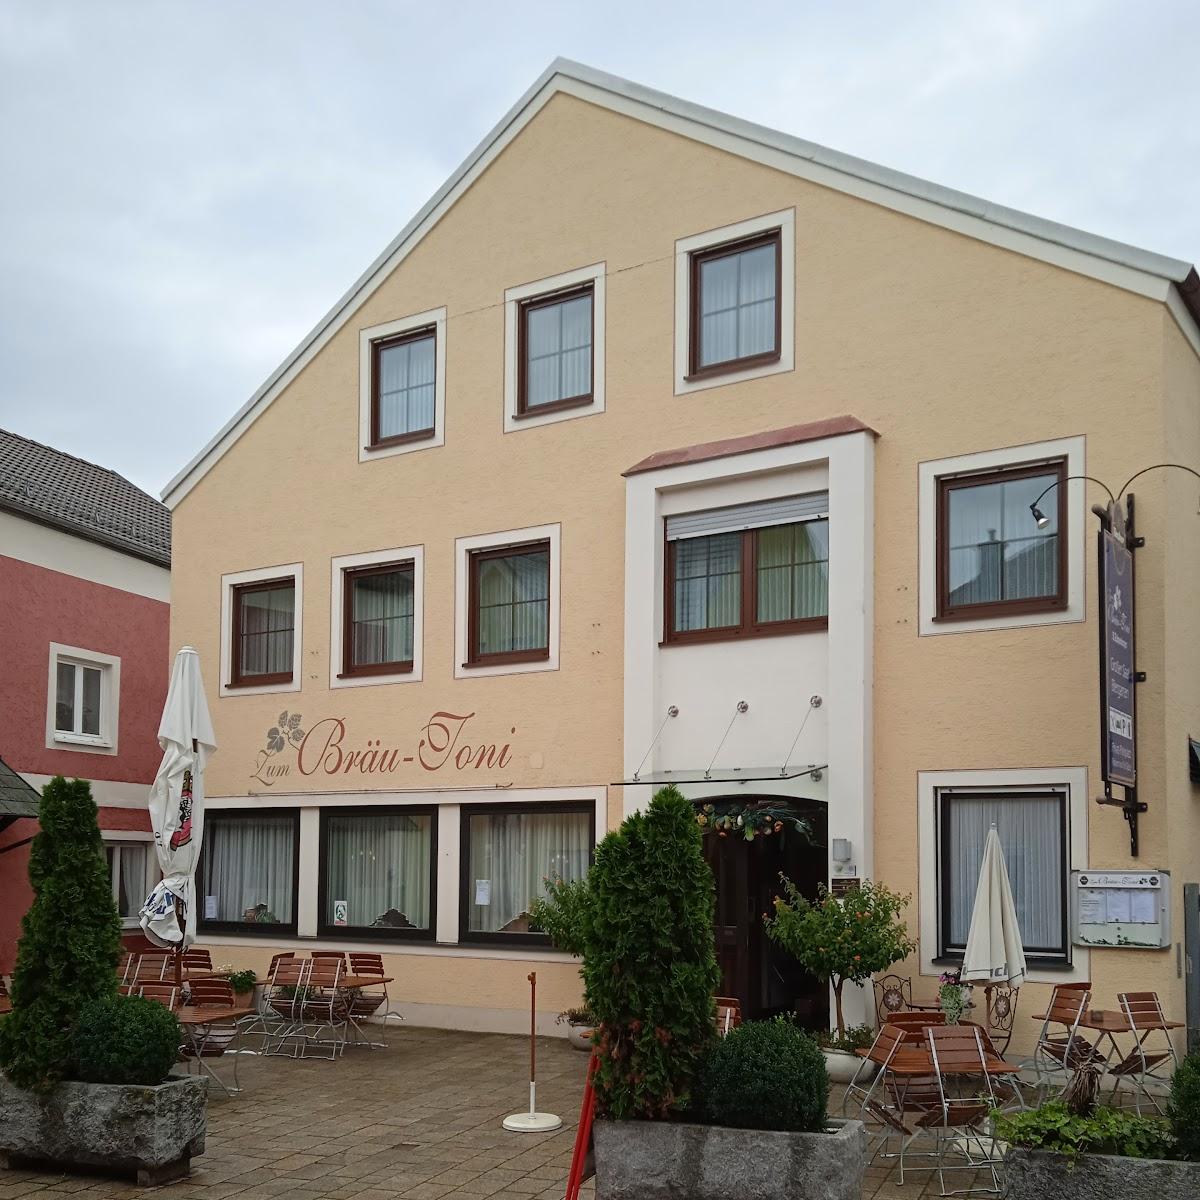 Restaurant "Xaver Schneeberger Hotel Gasthof Zum Bräu Toni" in Dietfurt an der Altmühl